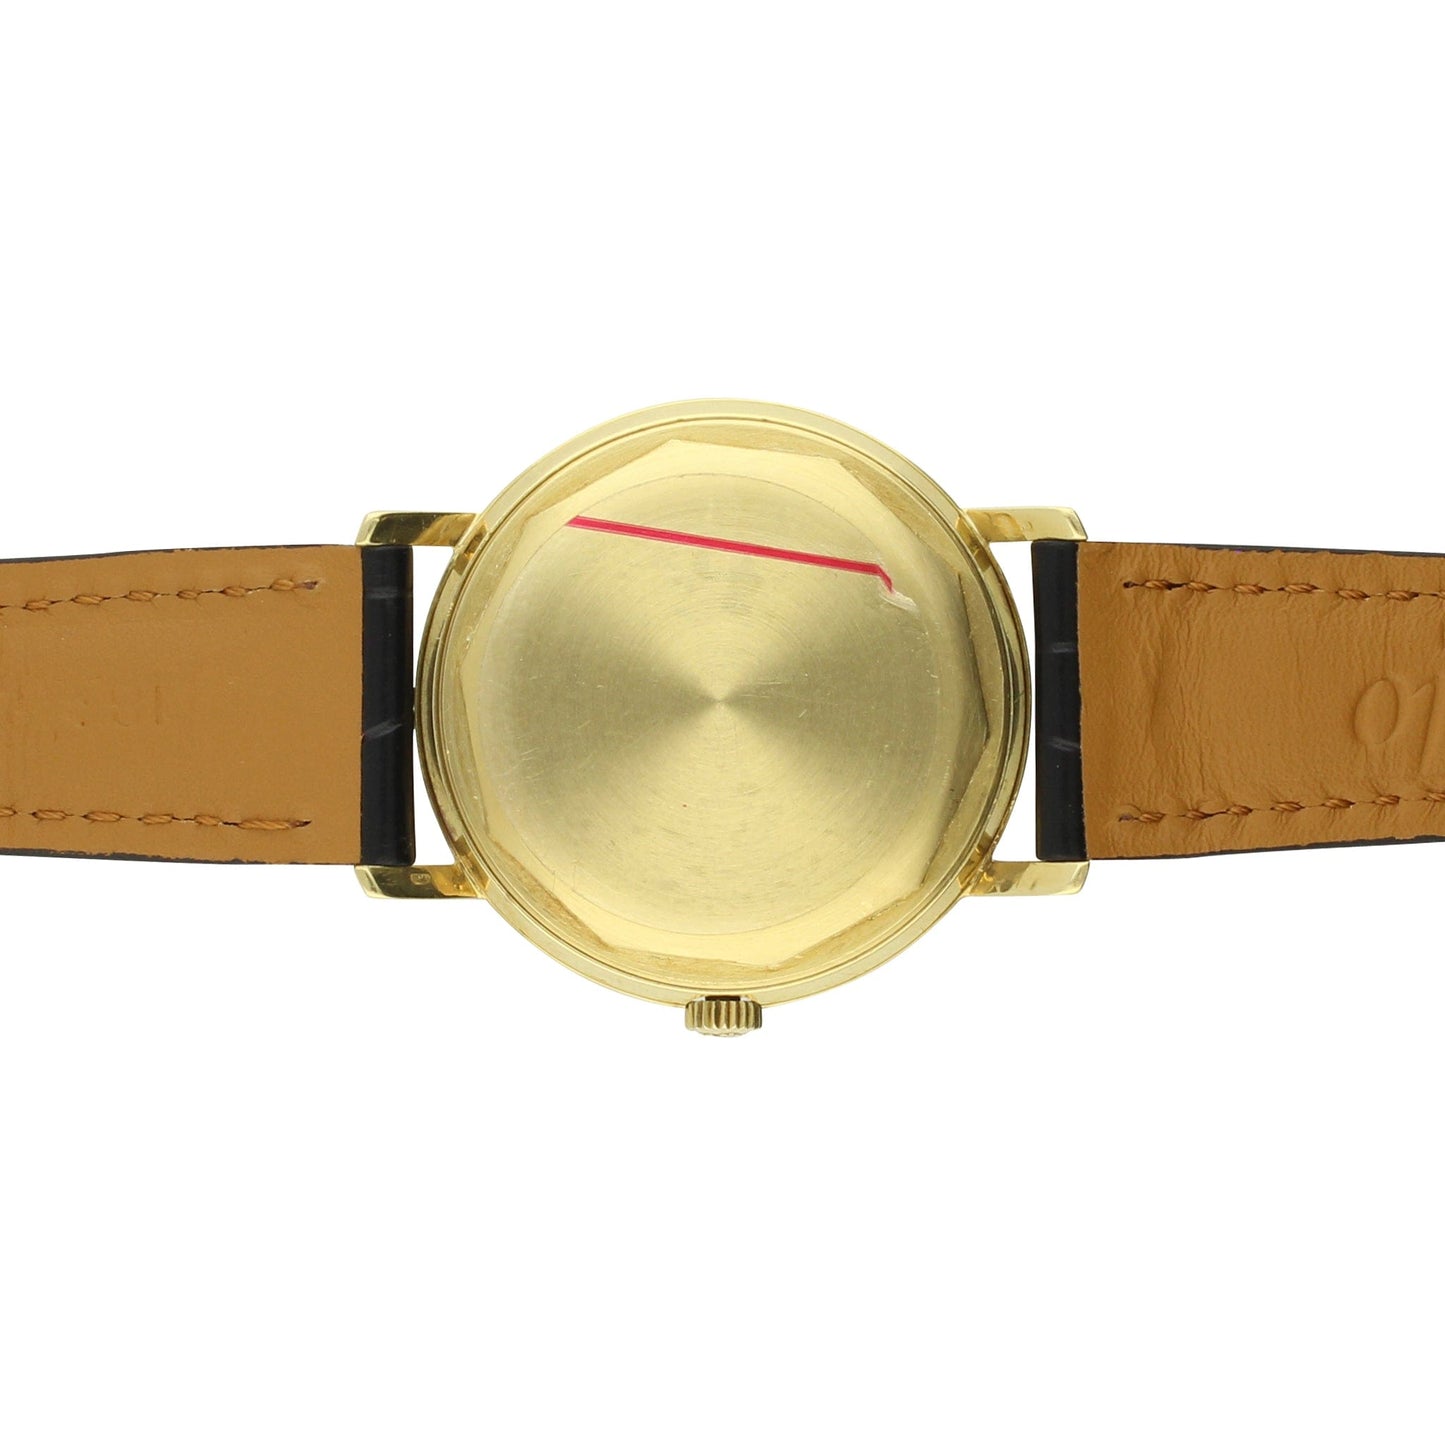 18ct yellow gold, reference 3445 automatic Calatrava wristwatch. Made 1969